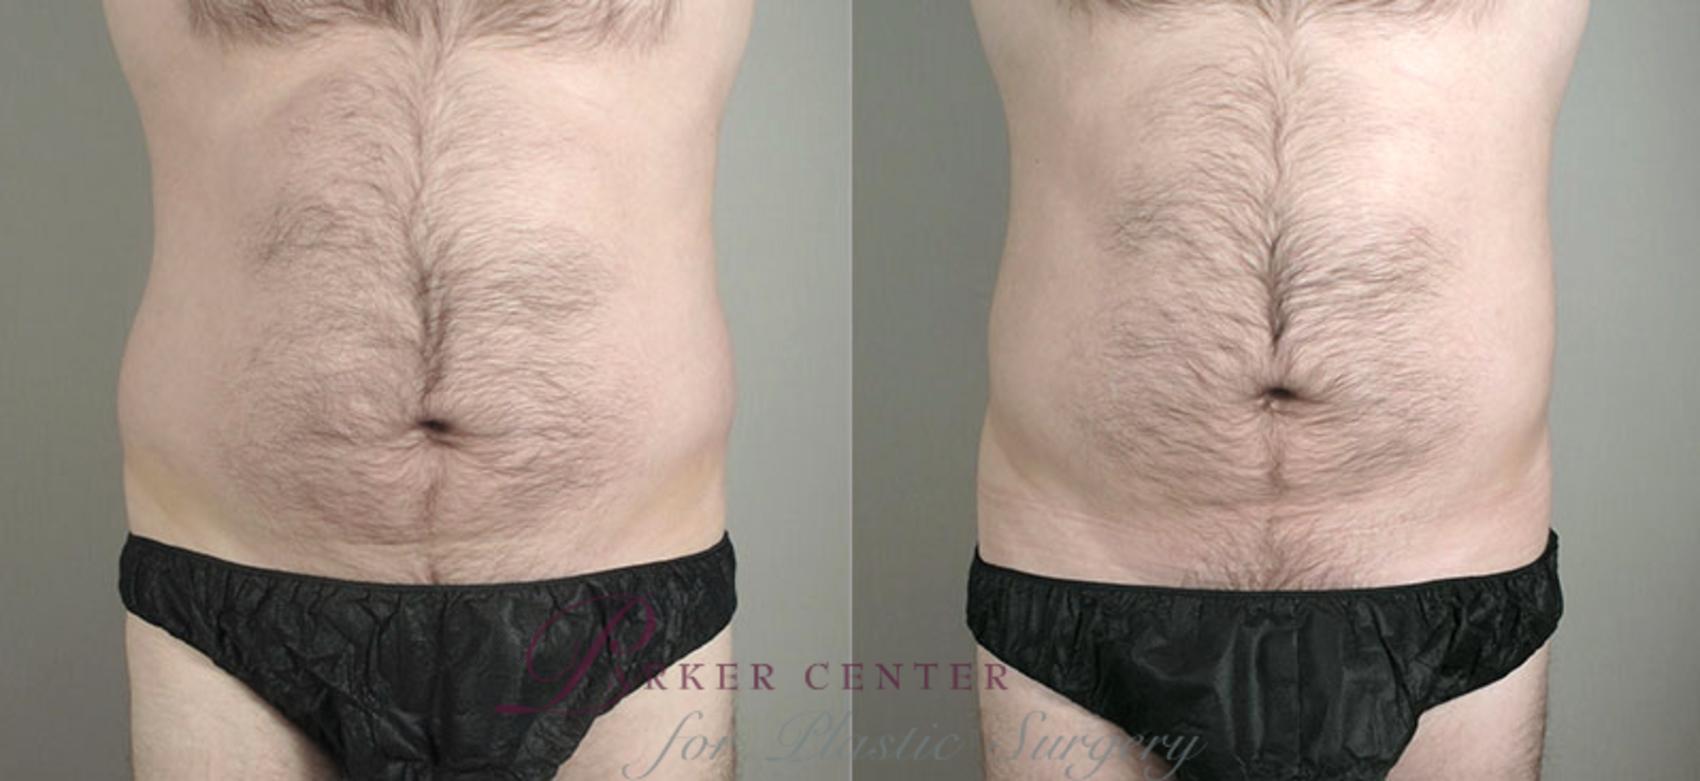 Liposuction Case 780 Before & After View #1 | Paramus, NJ | Parker Center for Plastic Surgery